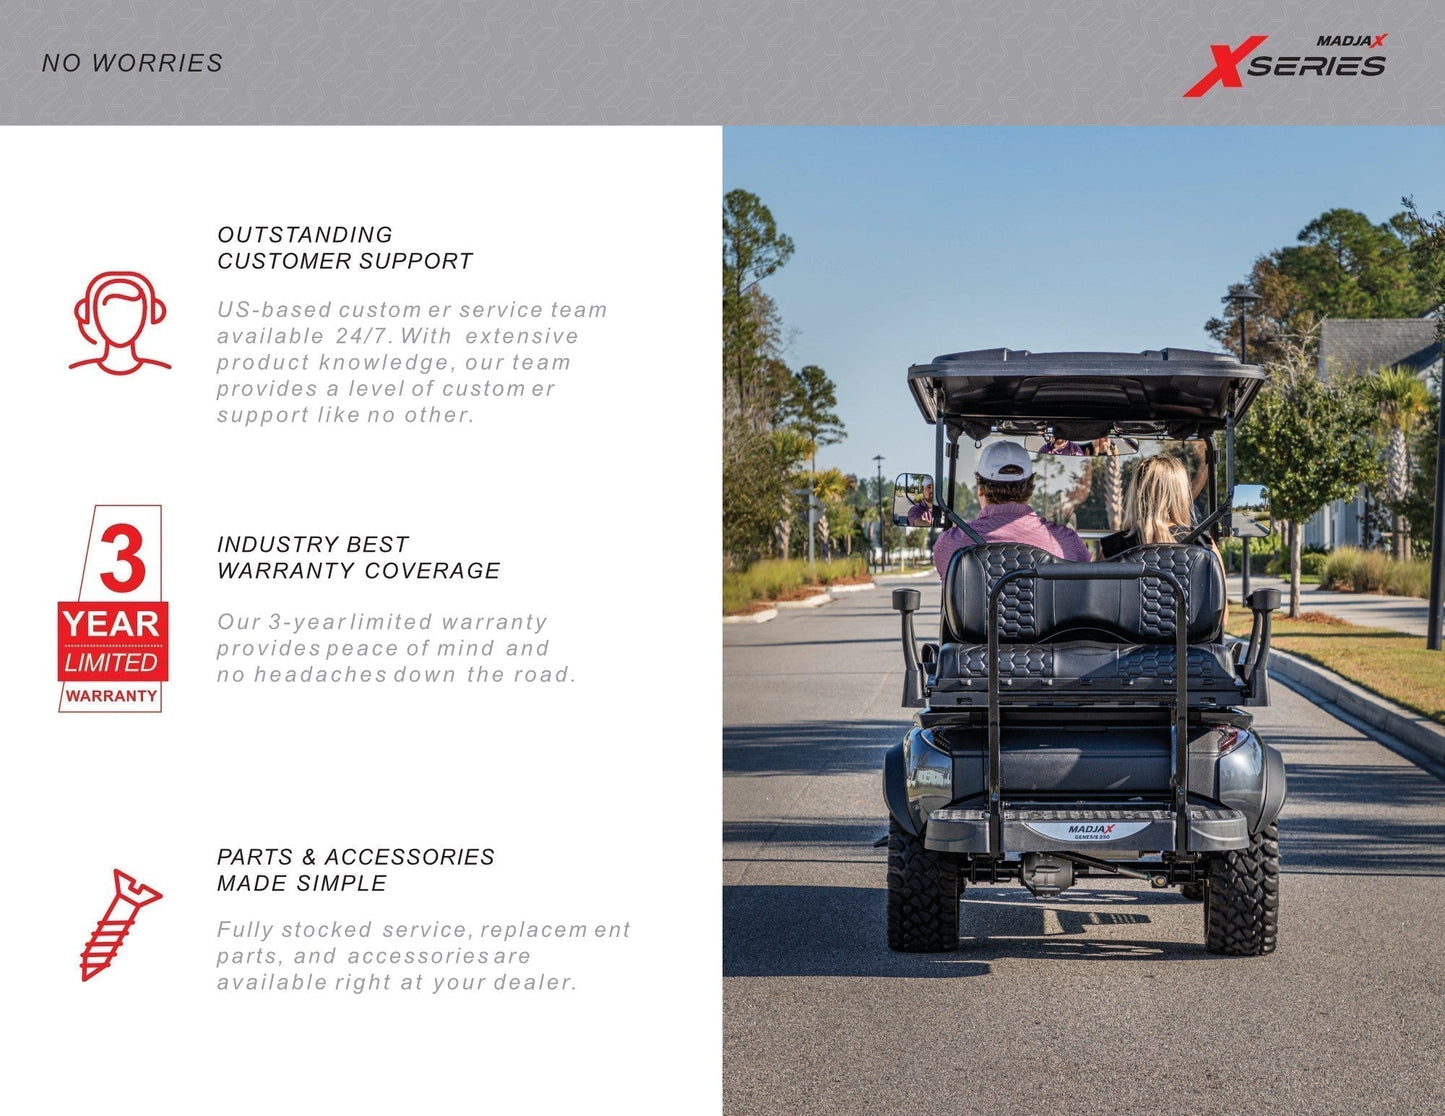 MADJAX X Series Storm Lifted 4 Passenger Golf Cart - Cherry Metallic #1084 *SOLD*